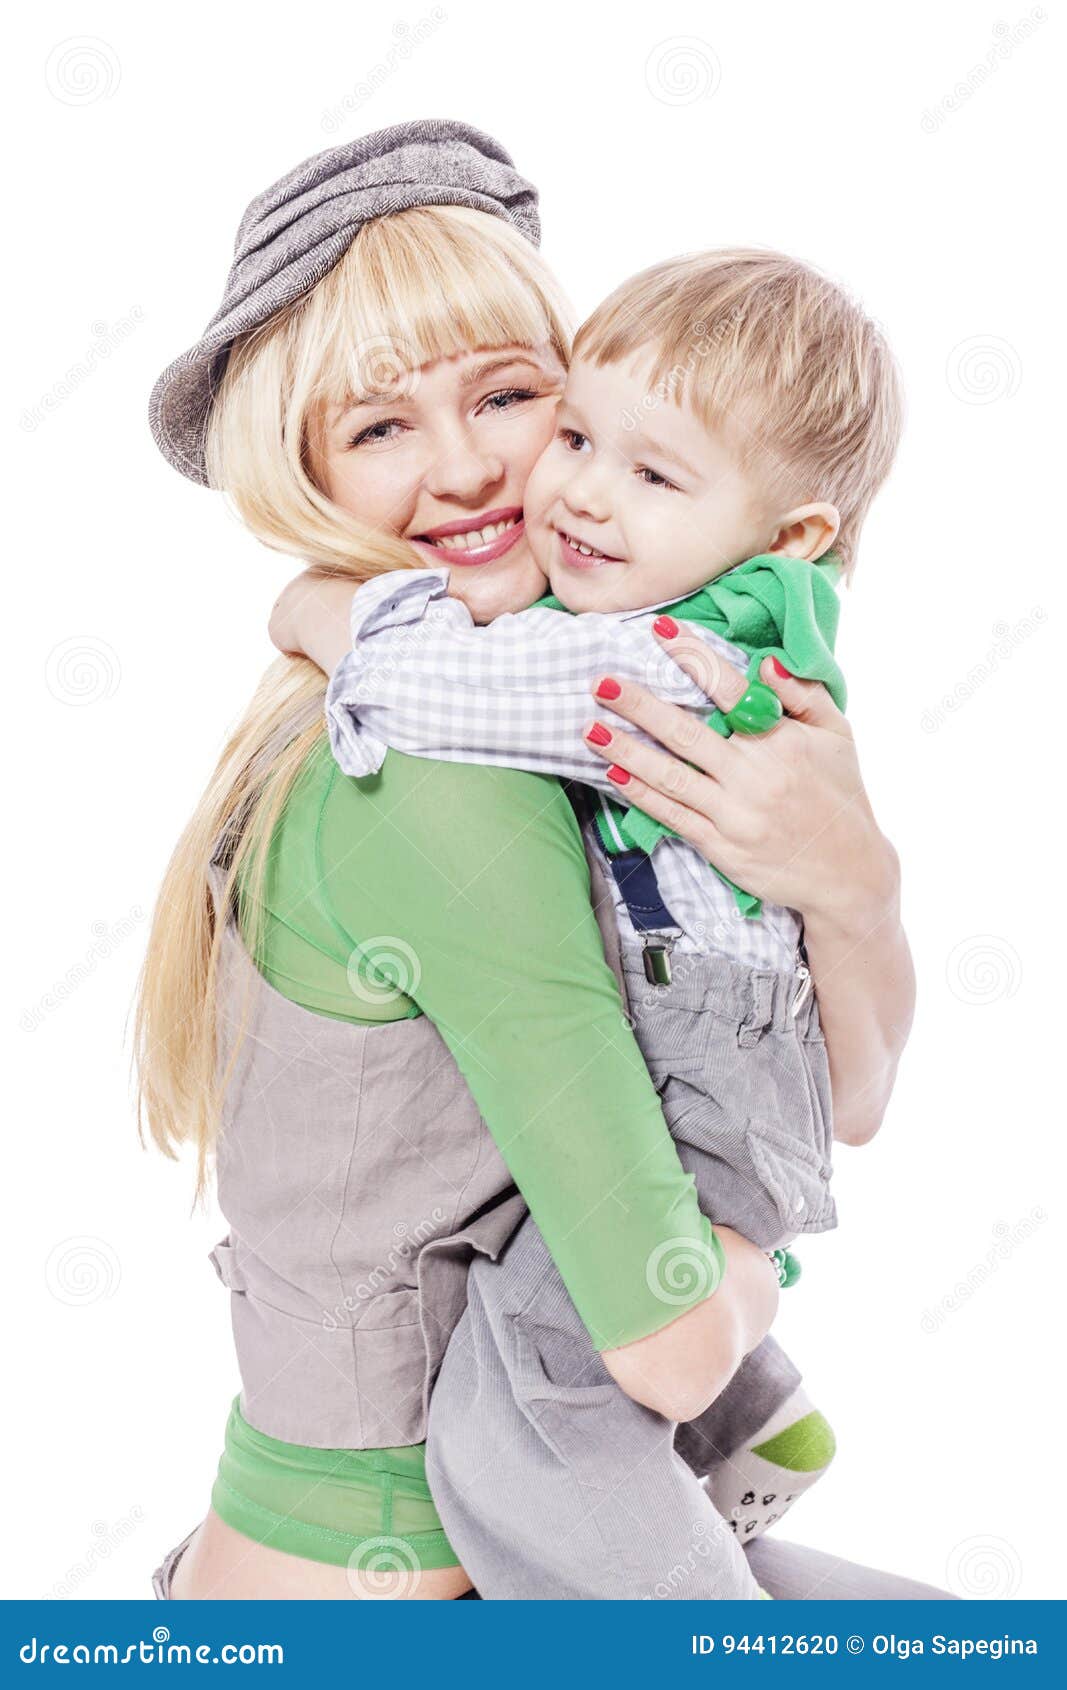 Плотный мать. Ребенок приобнимает за пояс. Мама в Нижнем белье обнимает сына. Мальчик обнимает маму в Нижнем белье. В джинсовых шорты мамка обнимаетсы сына.